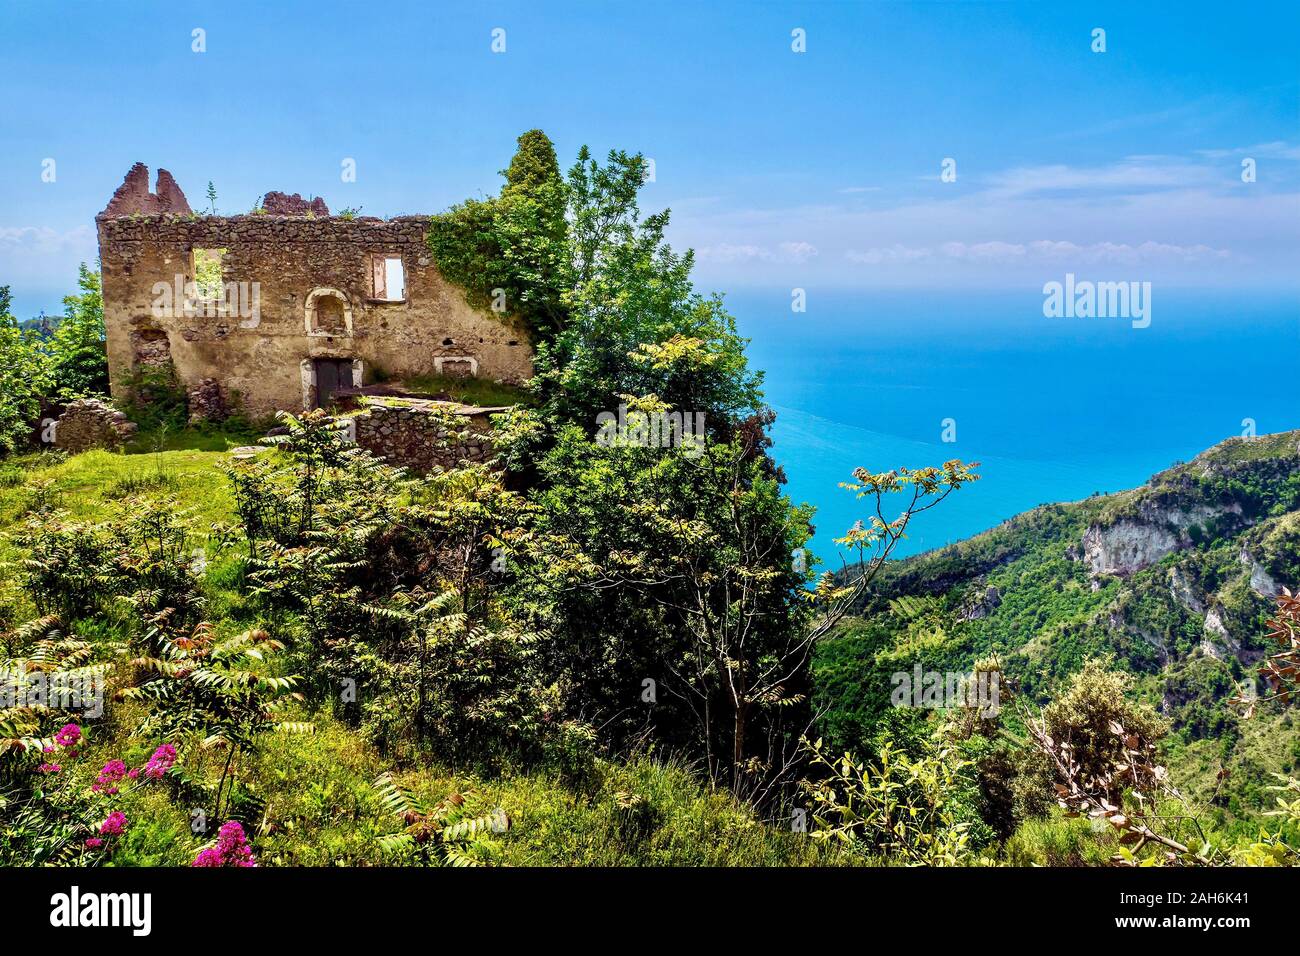 Wandel der Zeit. Ein altes, traditionelles Haus mit einem spektakulären Blick auf das Meer an der Italienischen Amalfiküste ist nun verlassenen und verfallenden. Stockfoto